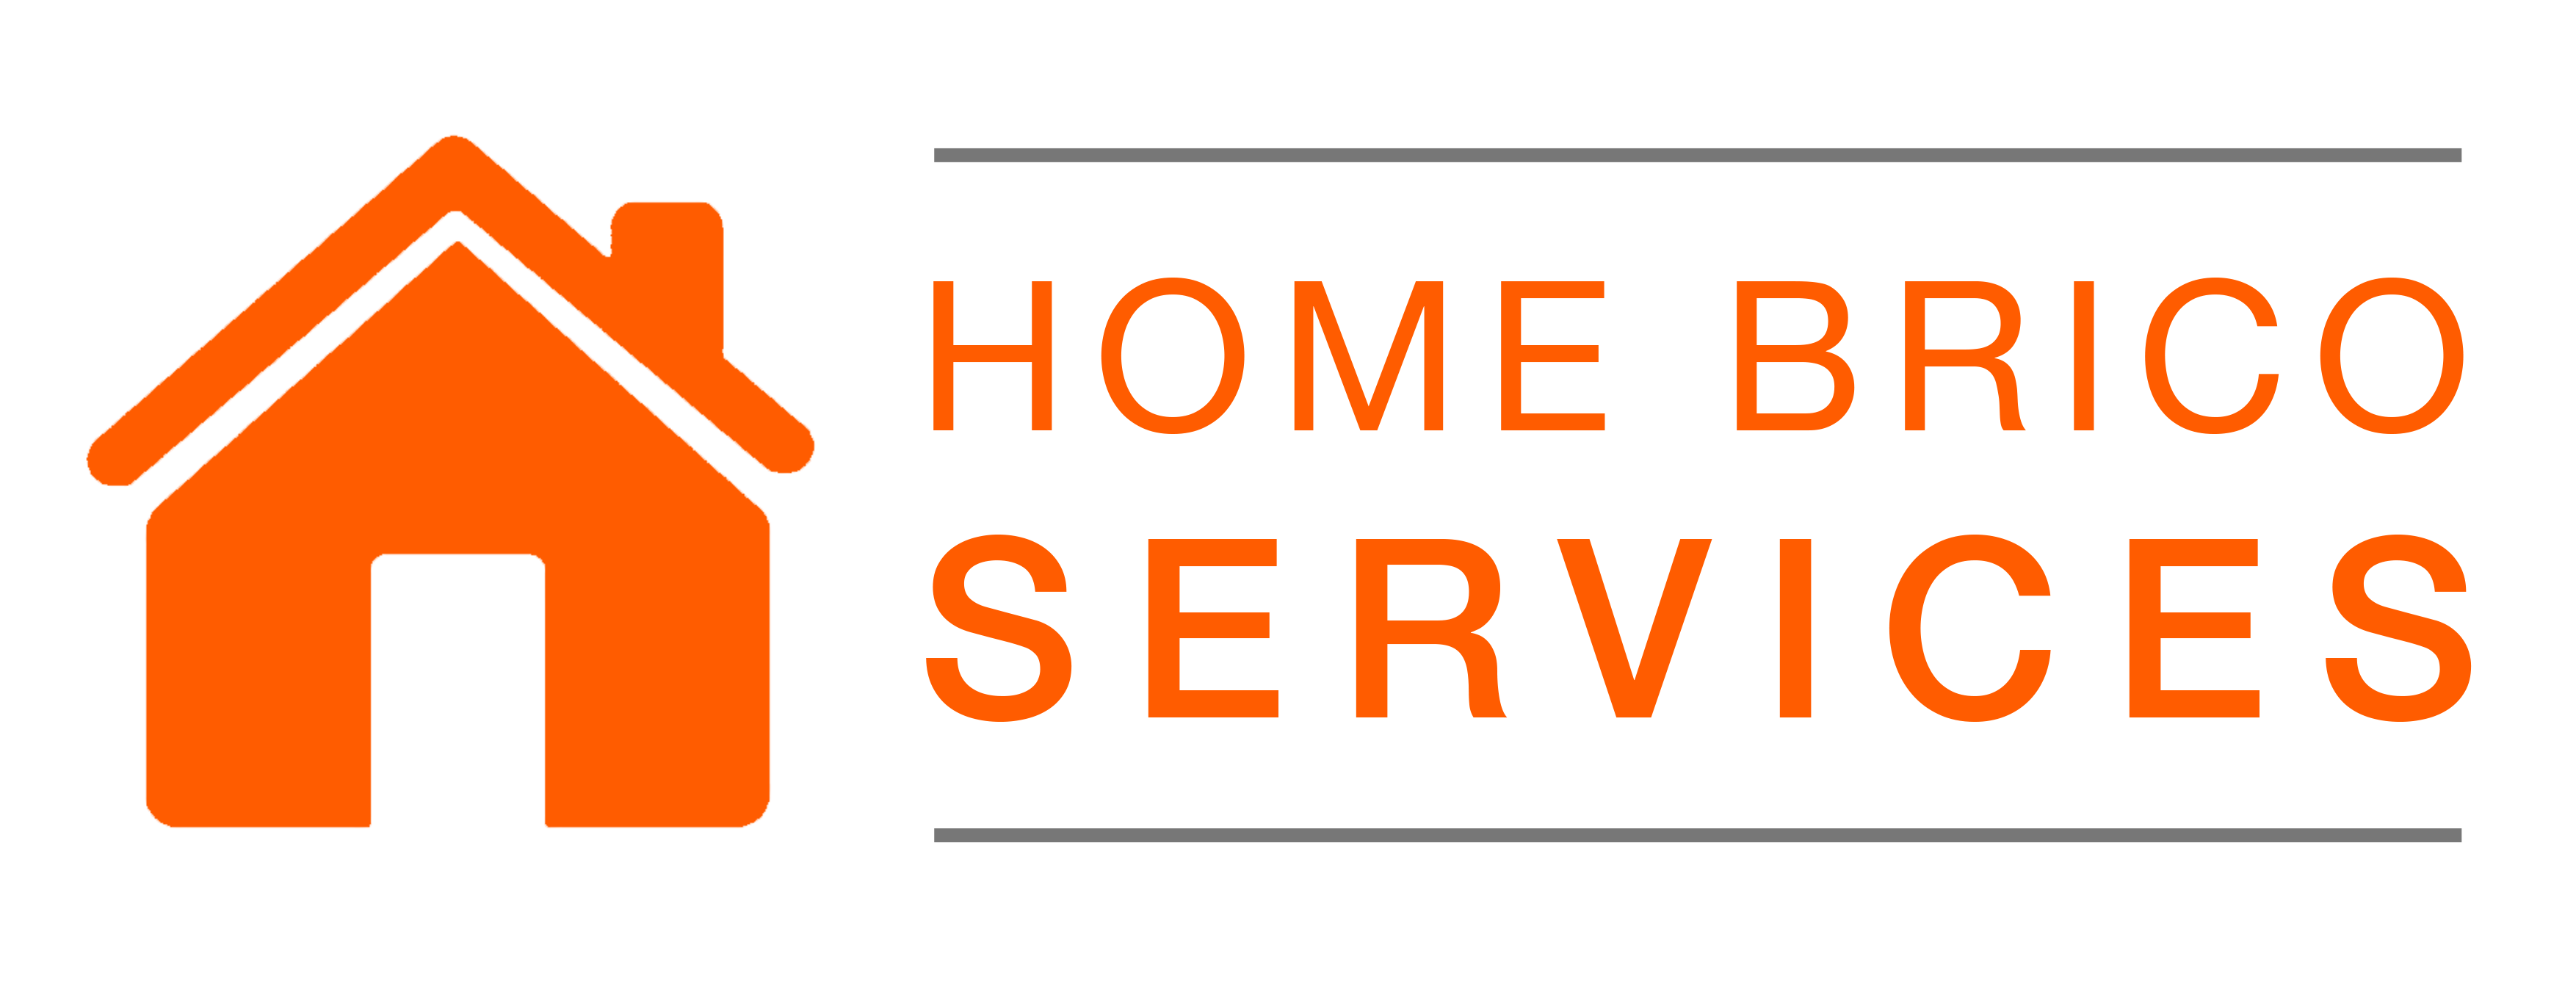 Home Brico Services